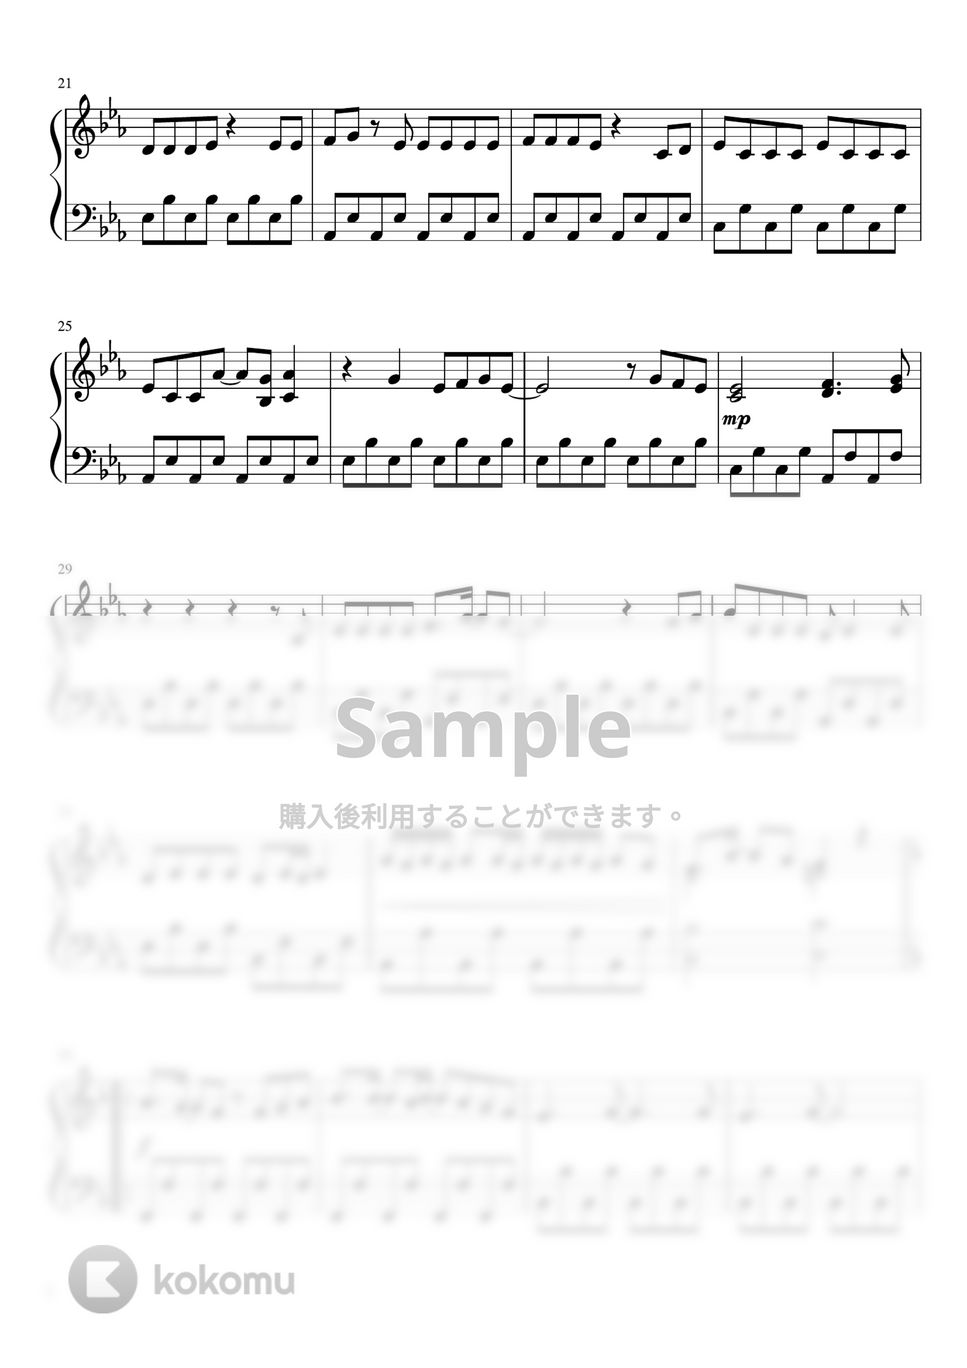 乃木坂46 - 僕は僕を好きになる (ピアノソロ / 初〜中級) by 牛武奏人